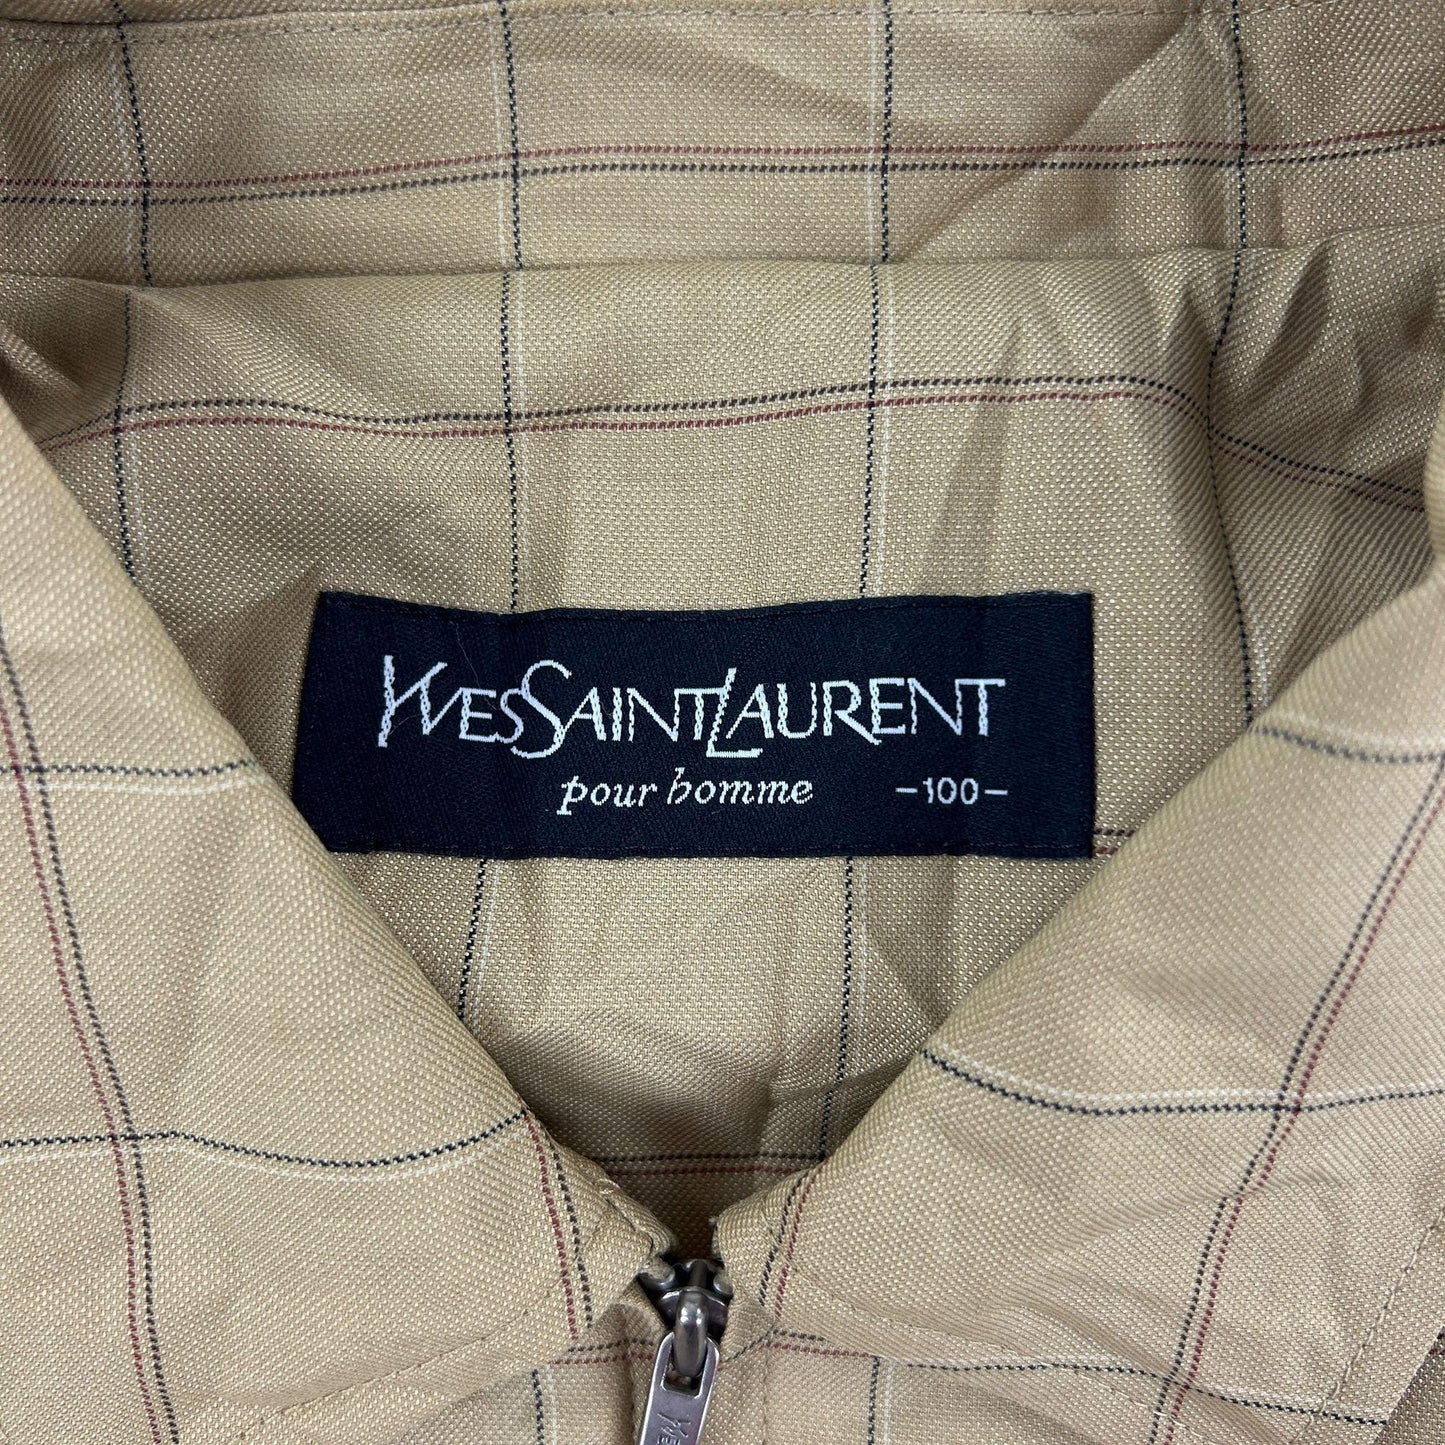 Vintage Yves Saint Laurent Check Jacket Size L - Known Source